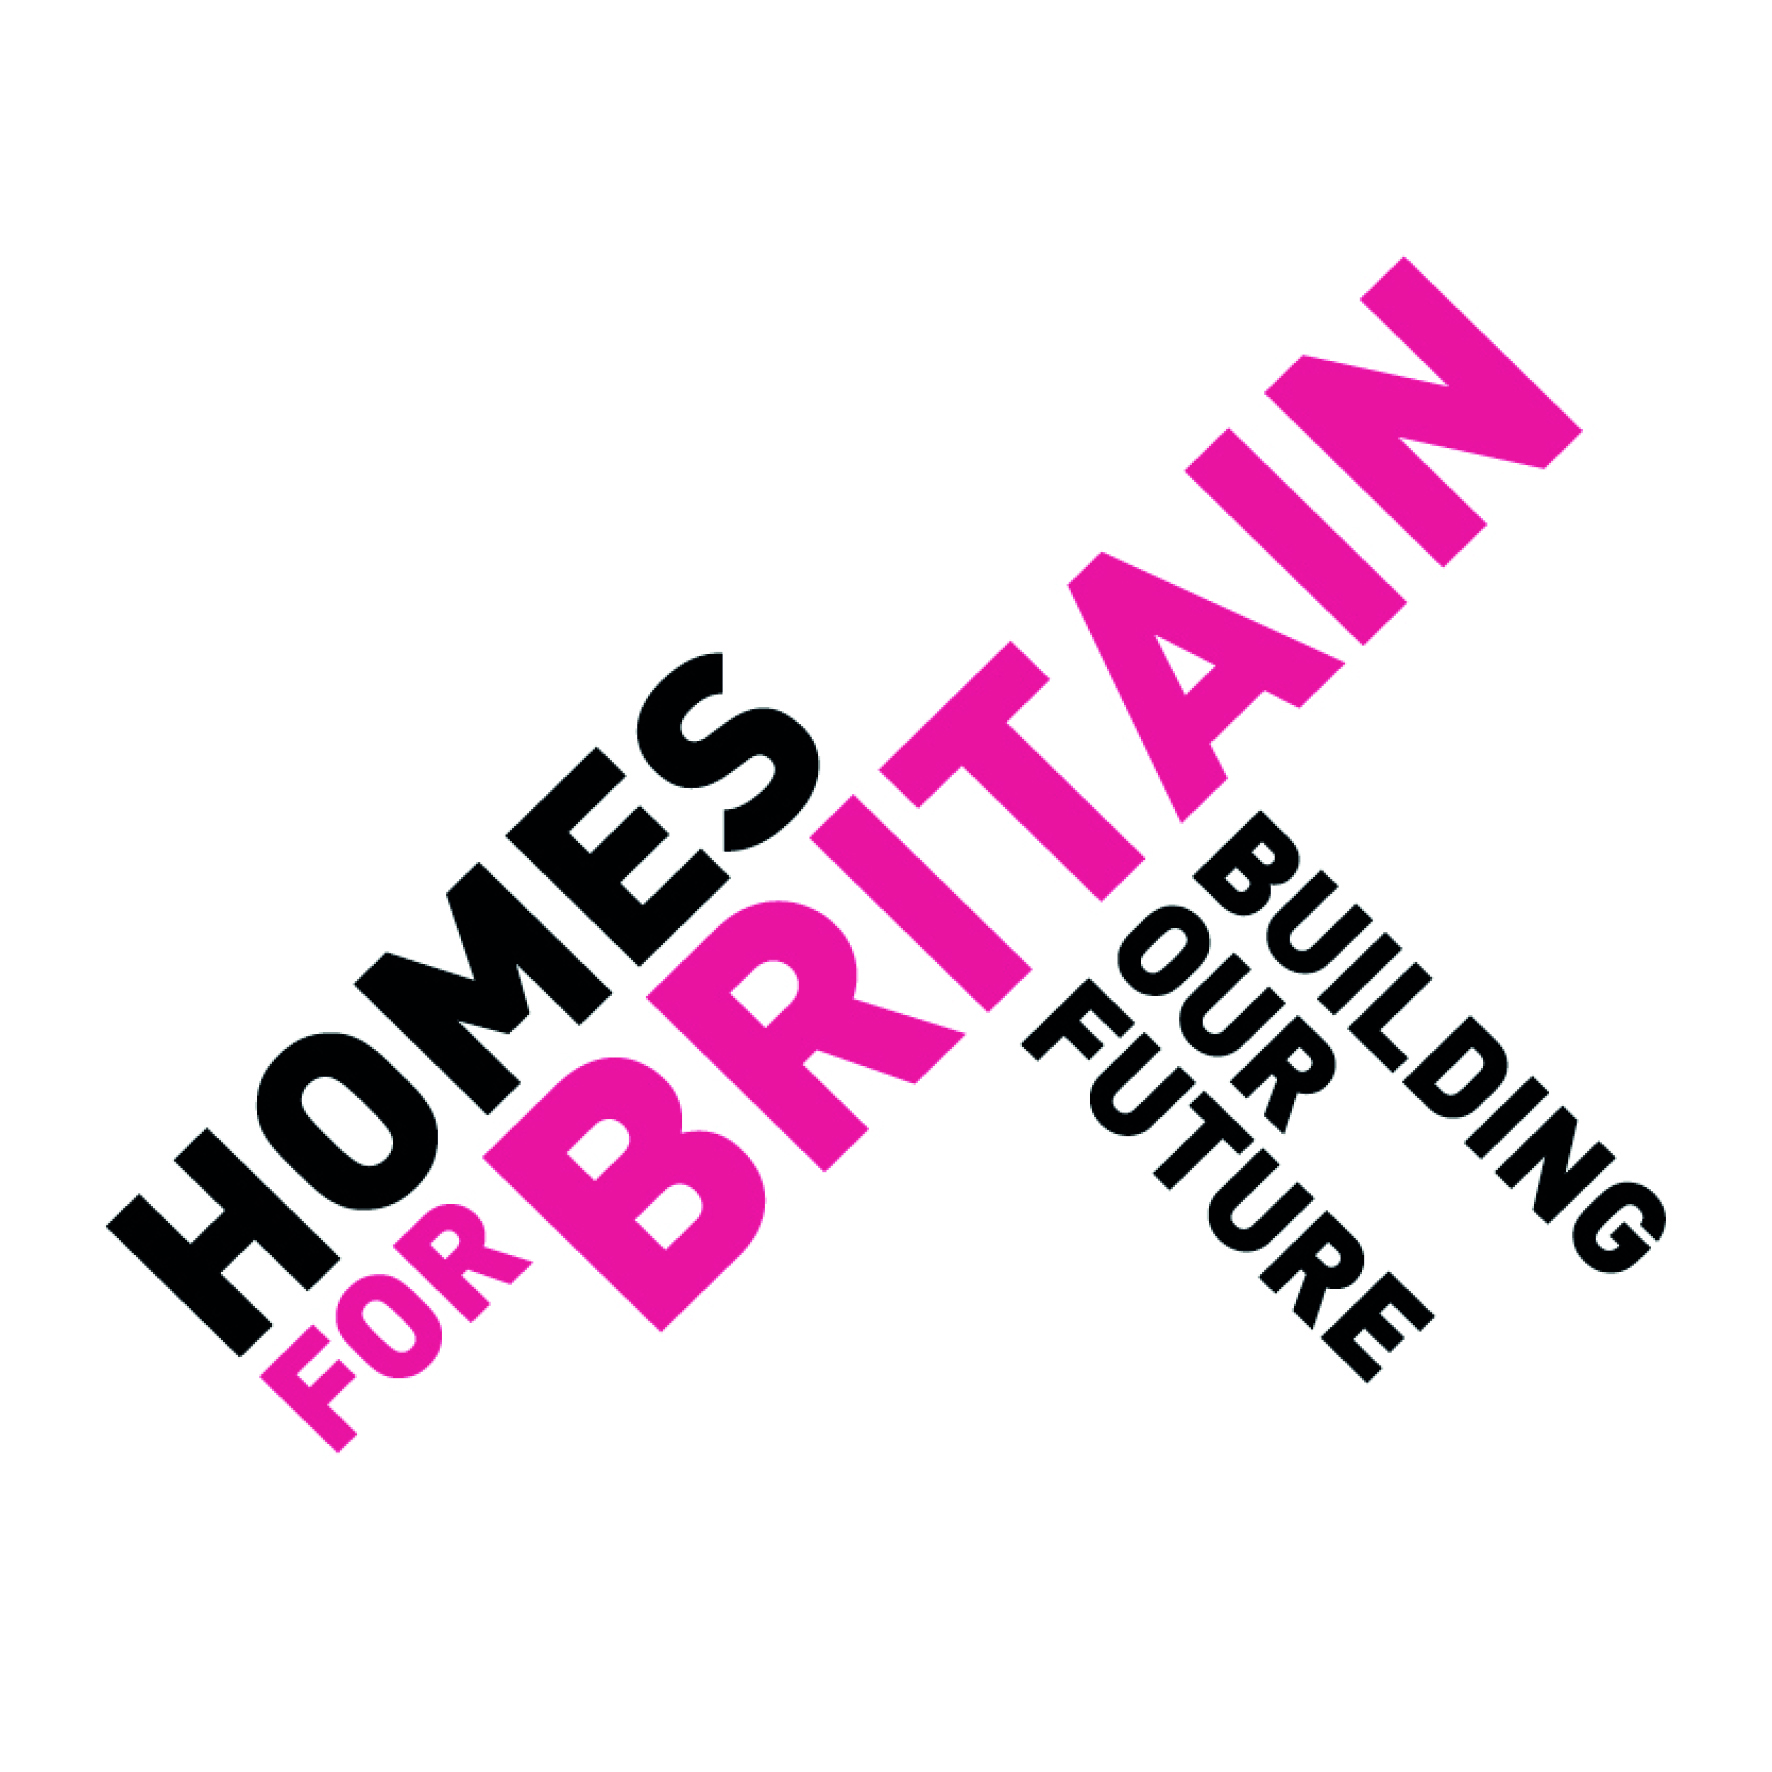 Homes for britain logo original